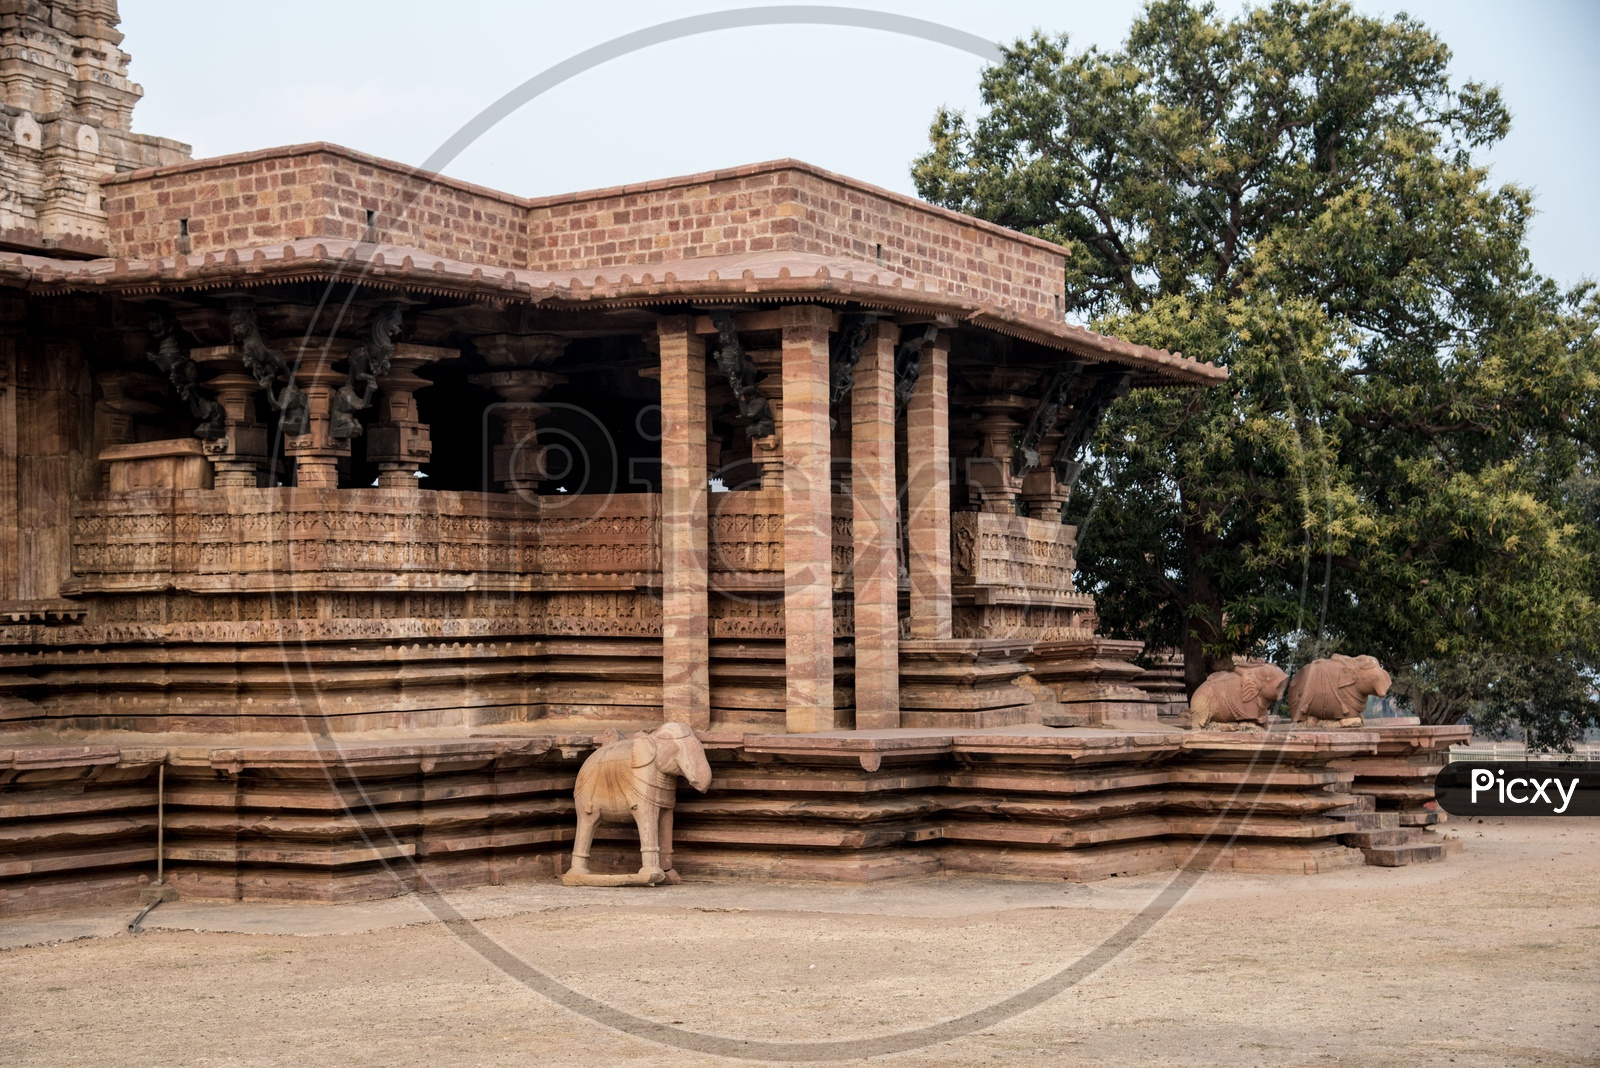 Kakatiya Architecture at Ramappa Temple